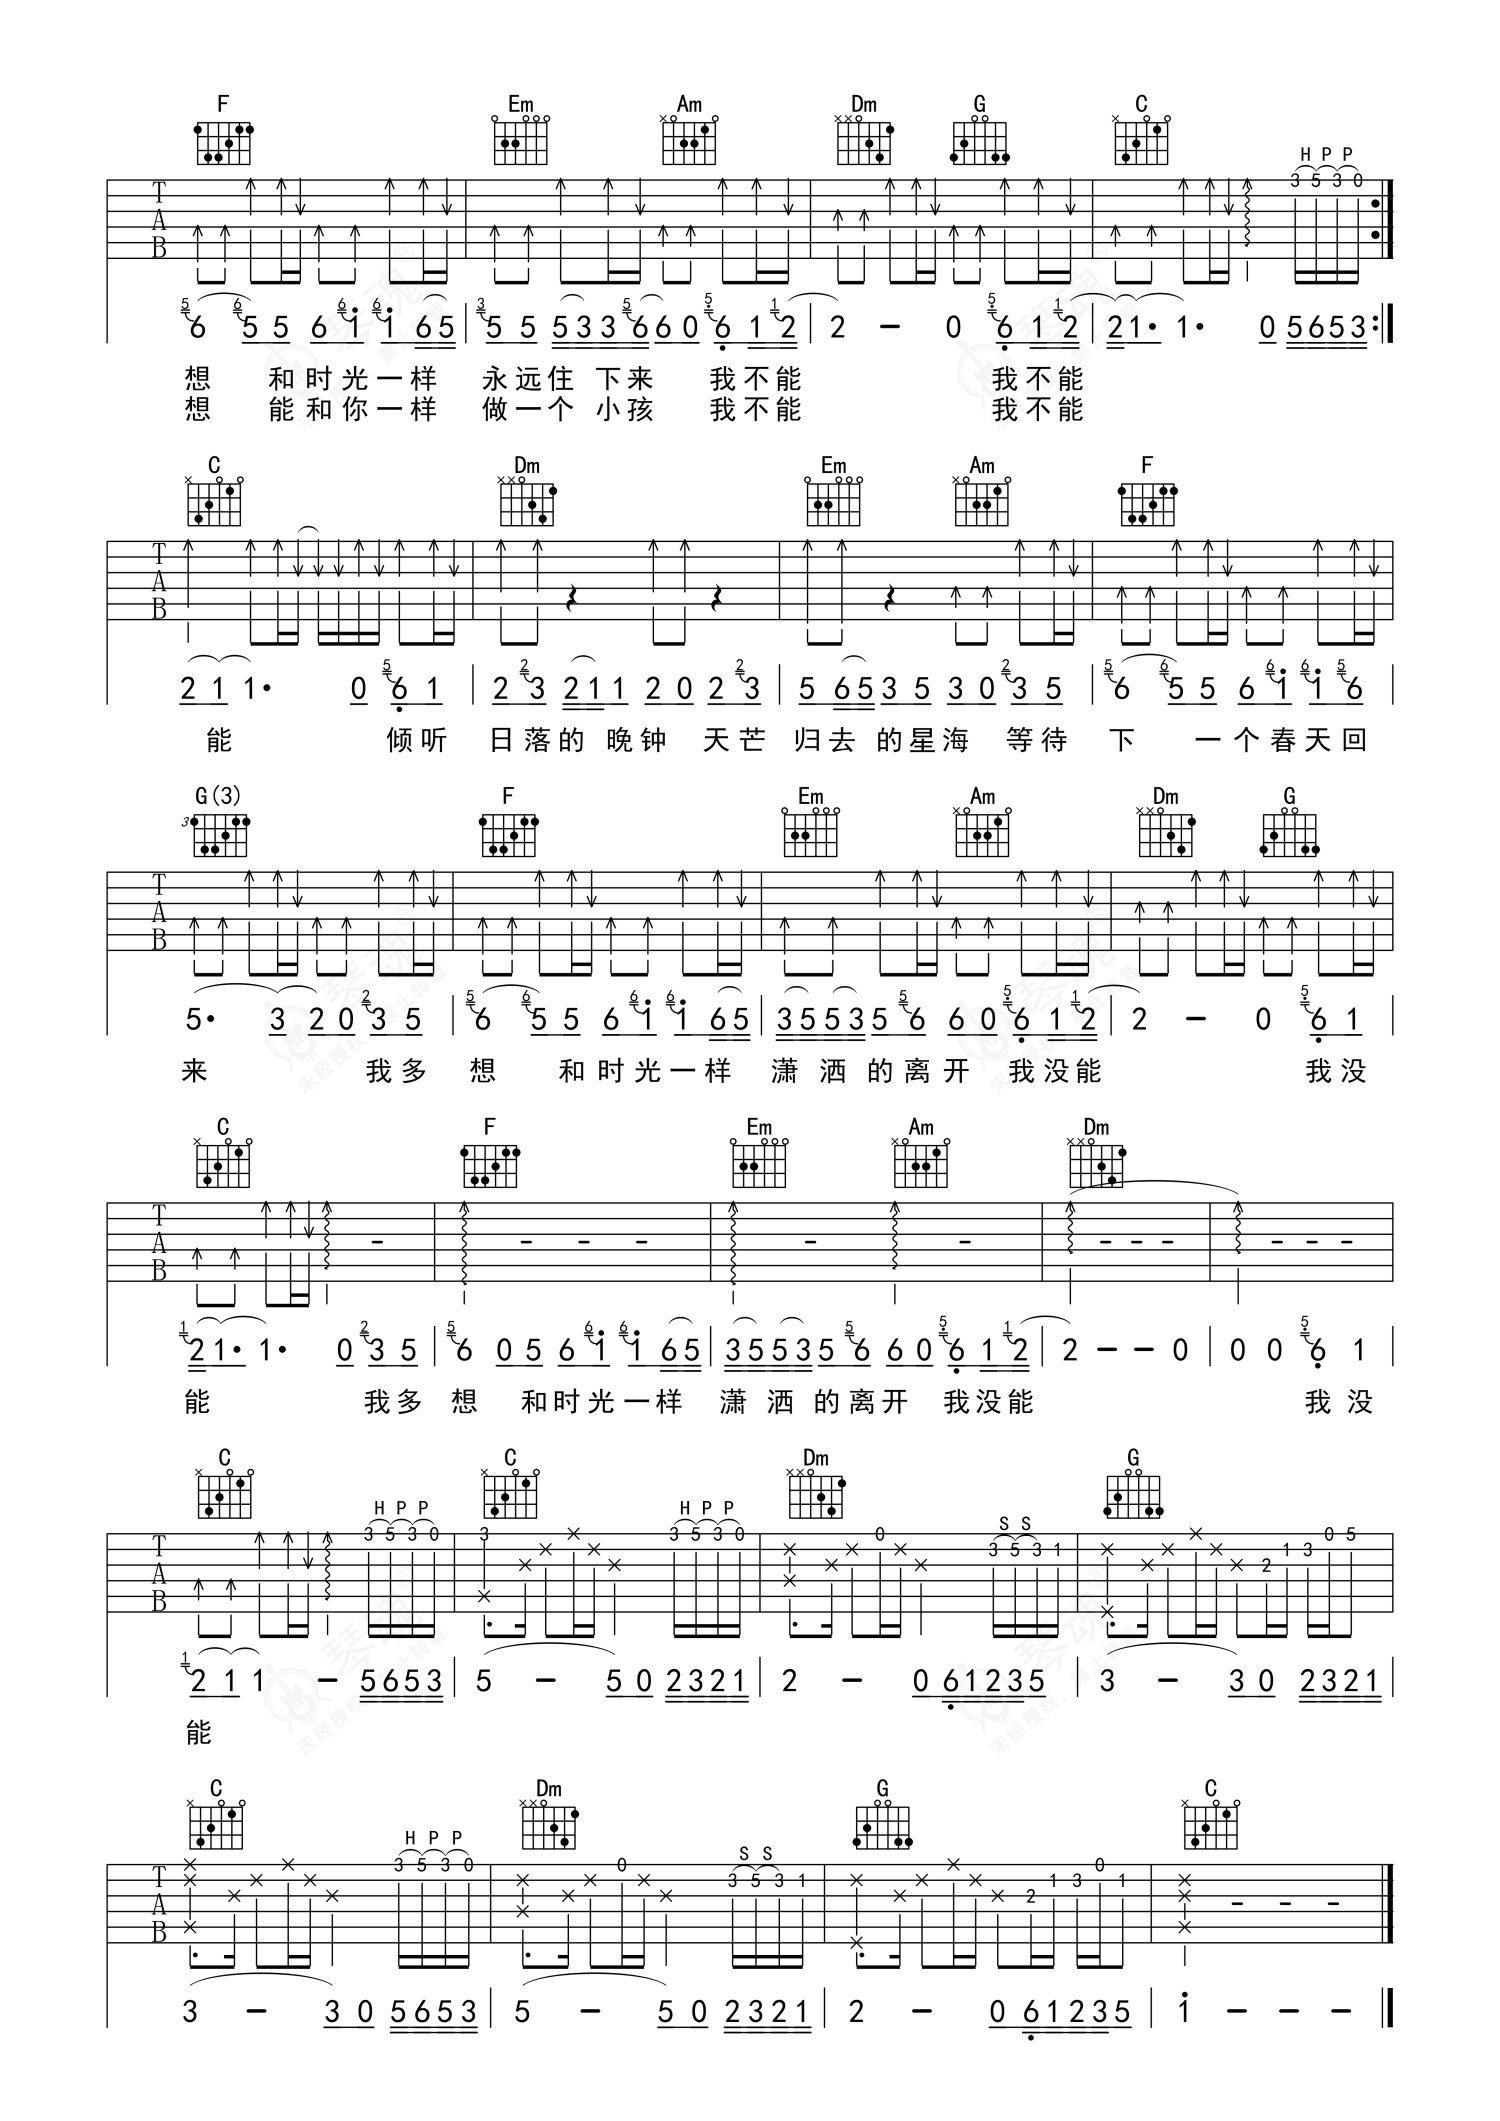 简单版《玛丽》钢琴谱 - 赵雷0基础钢琴简谱 - 高清谱子图片 - 钢琴简谱